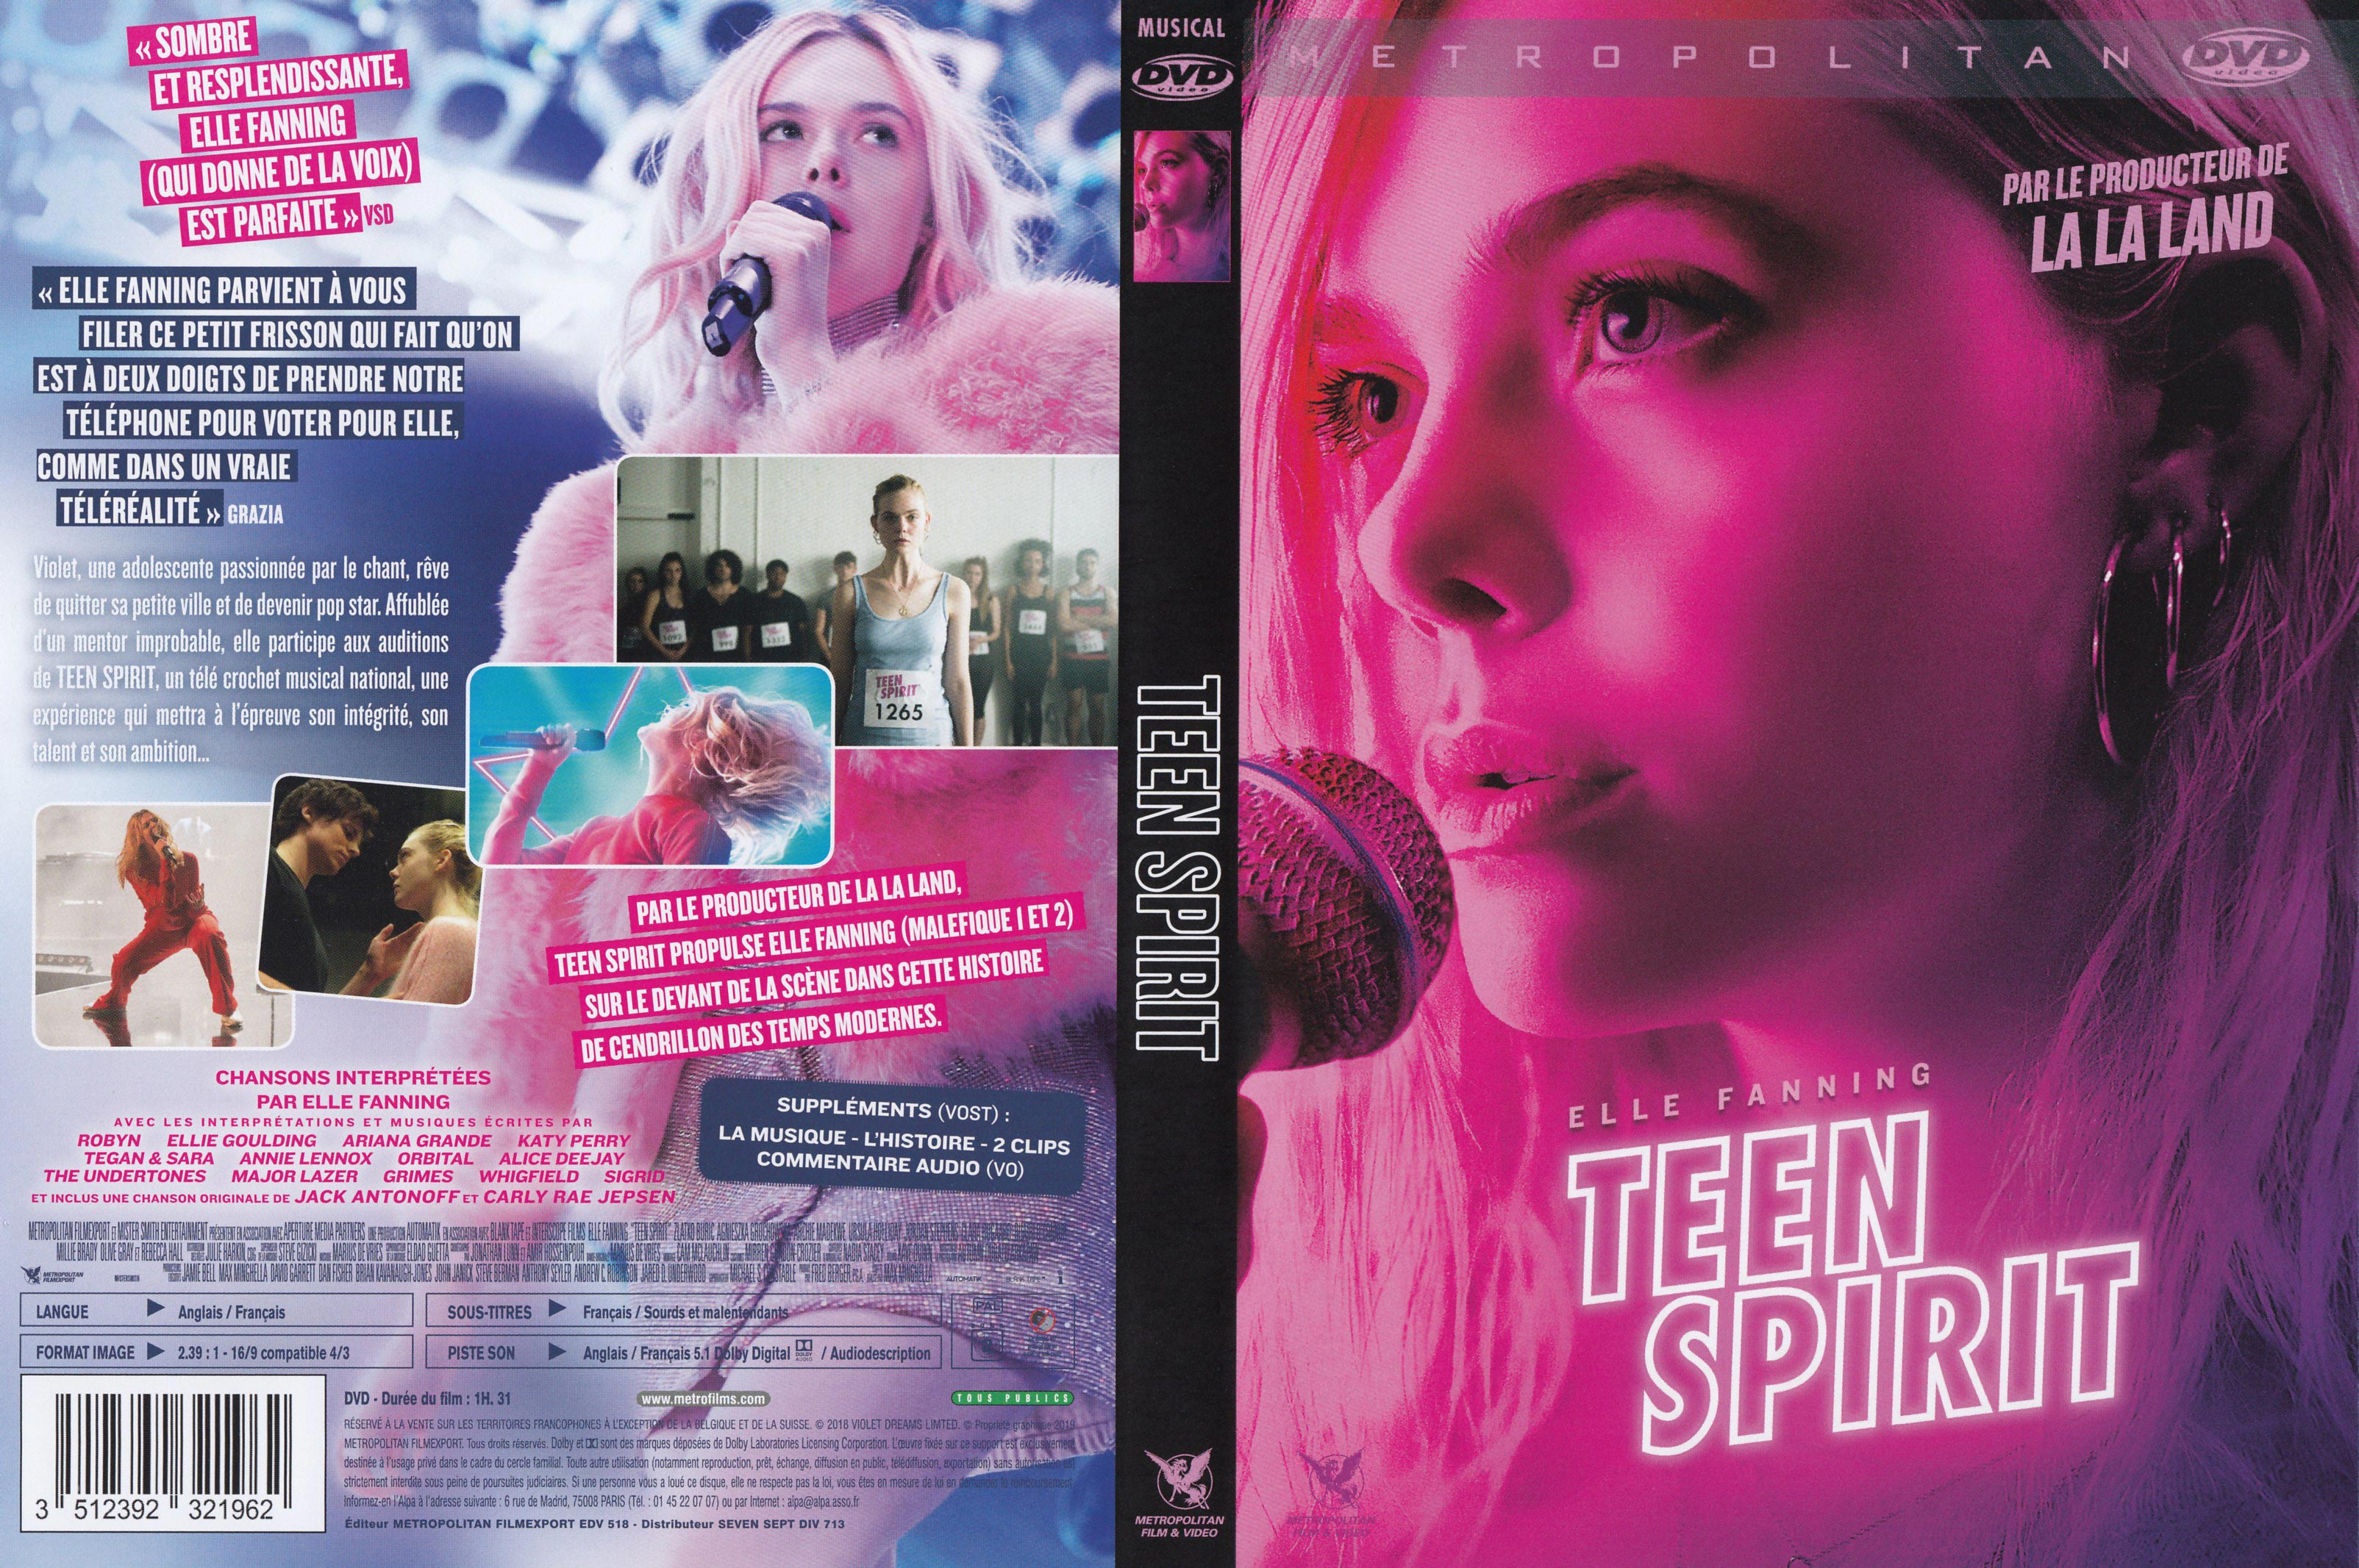 Jaquette DVD Teen spirit